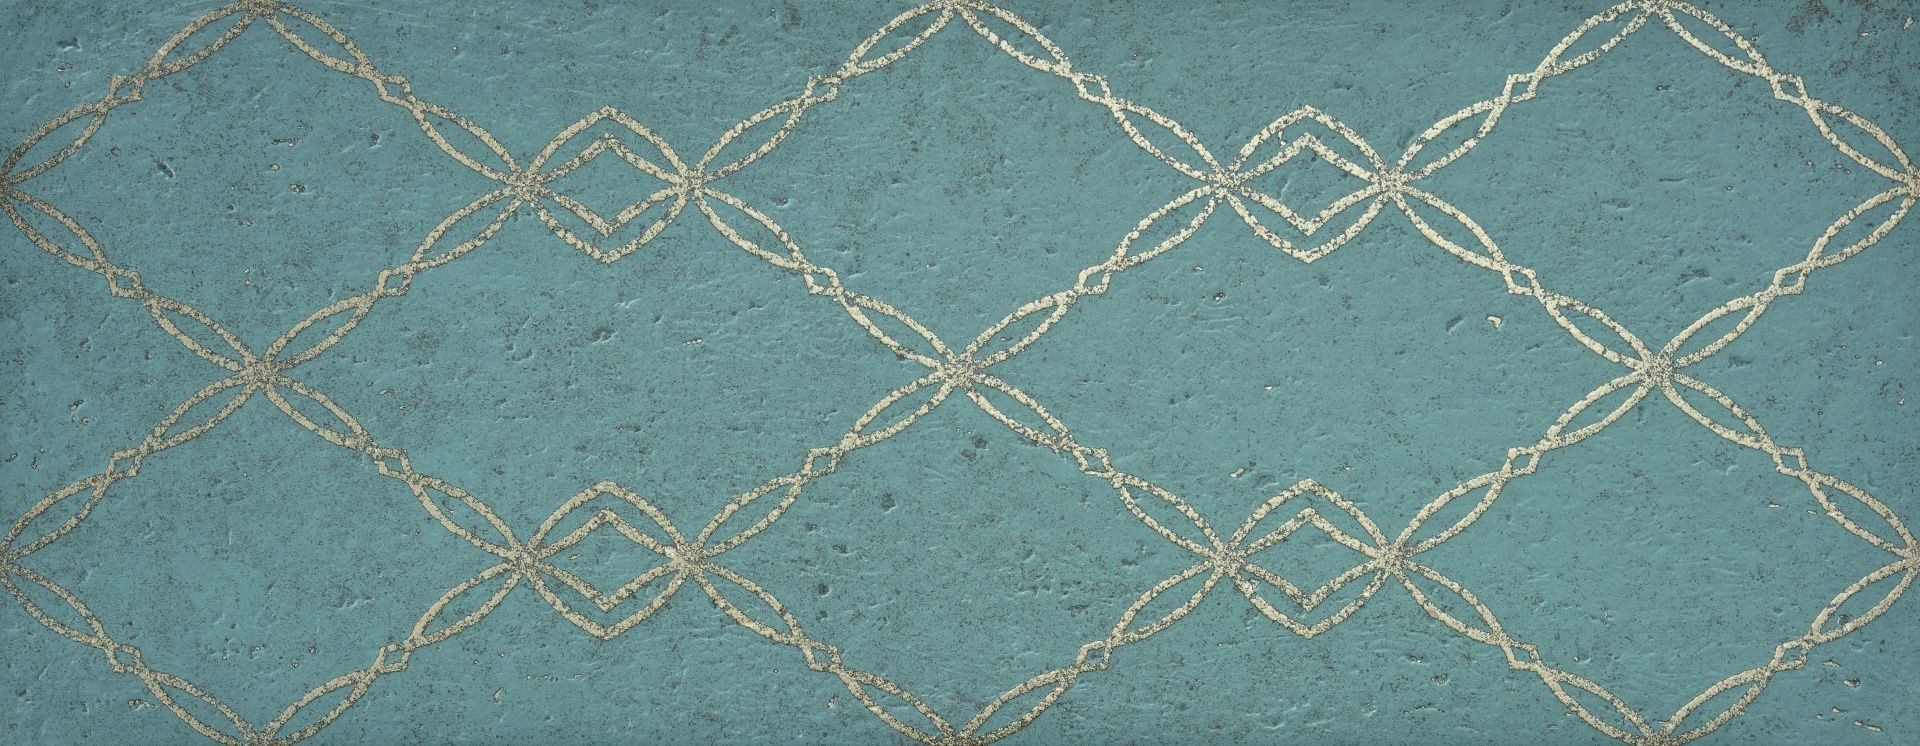 Керамическая плитка Goldstone Teal Chain для стен 35x90